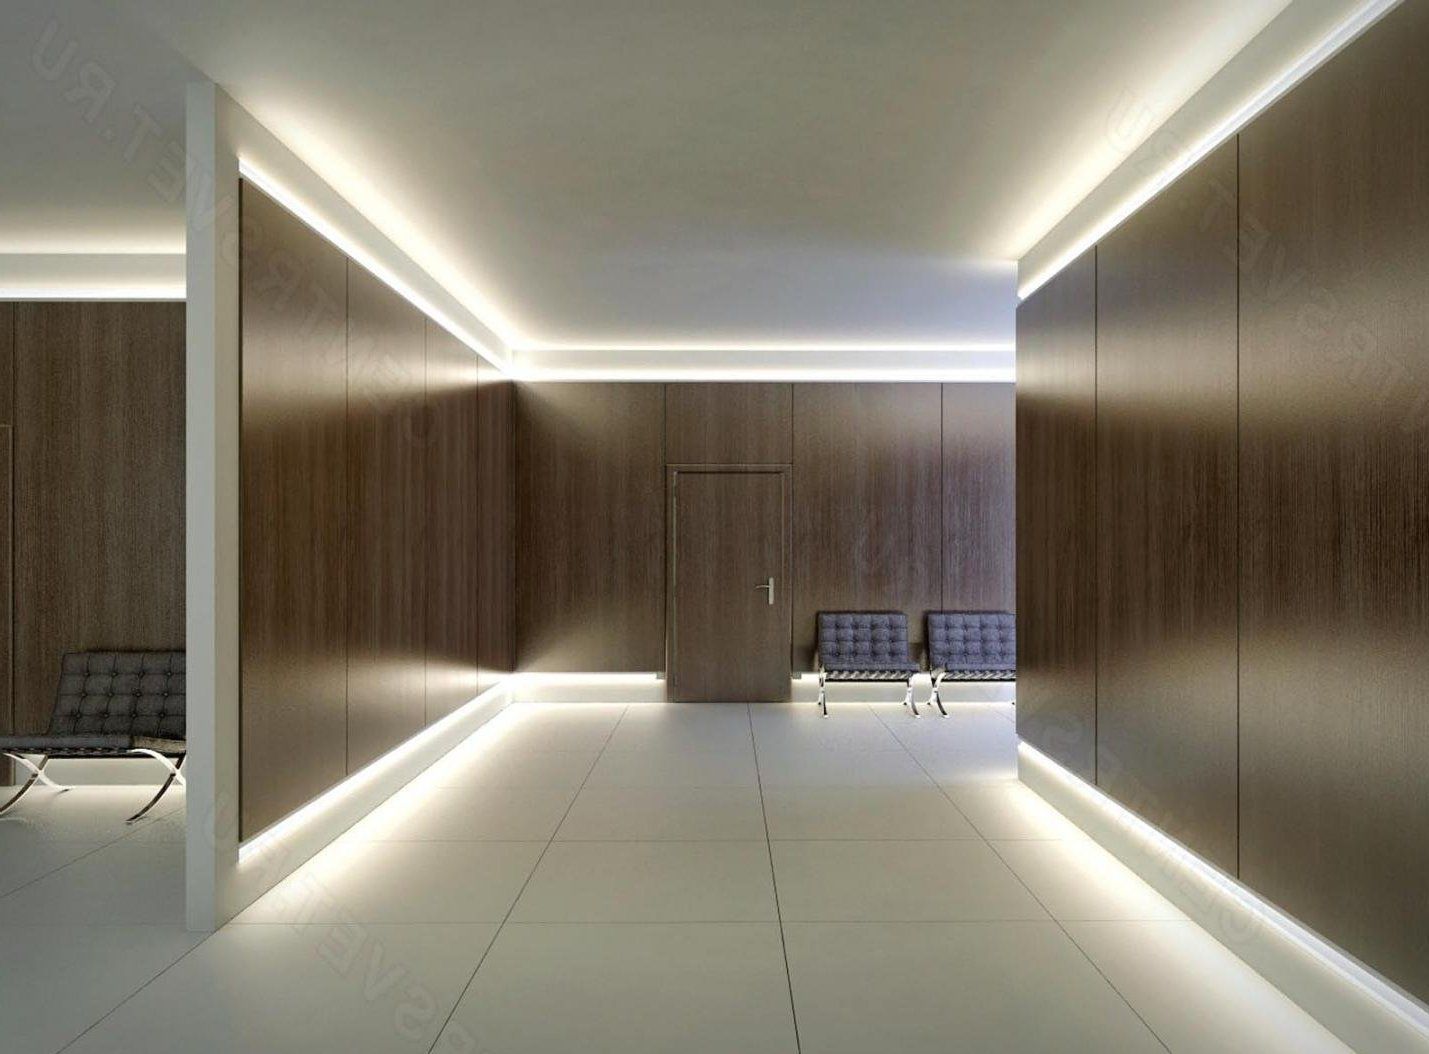 Buy LED lighting to increase energy efficiency in Israeli homes.